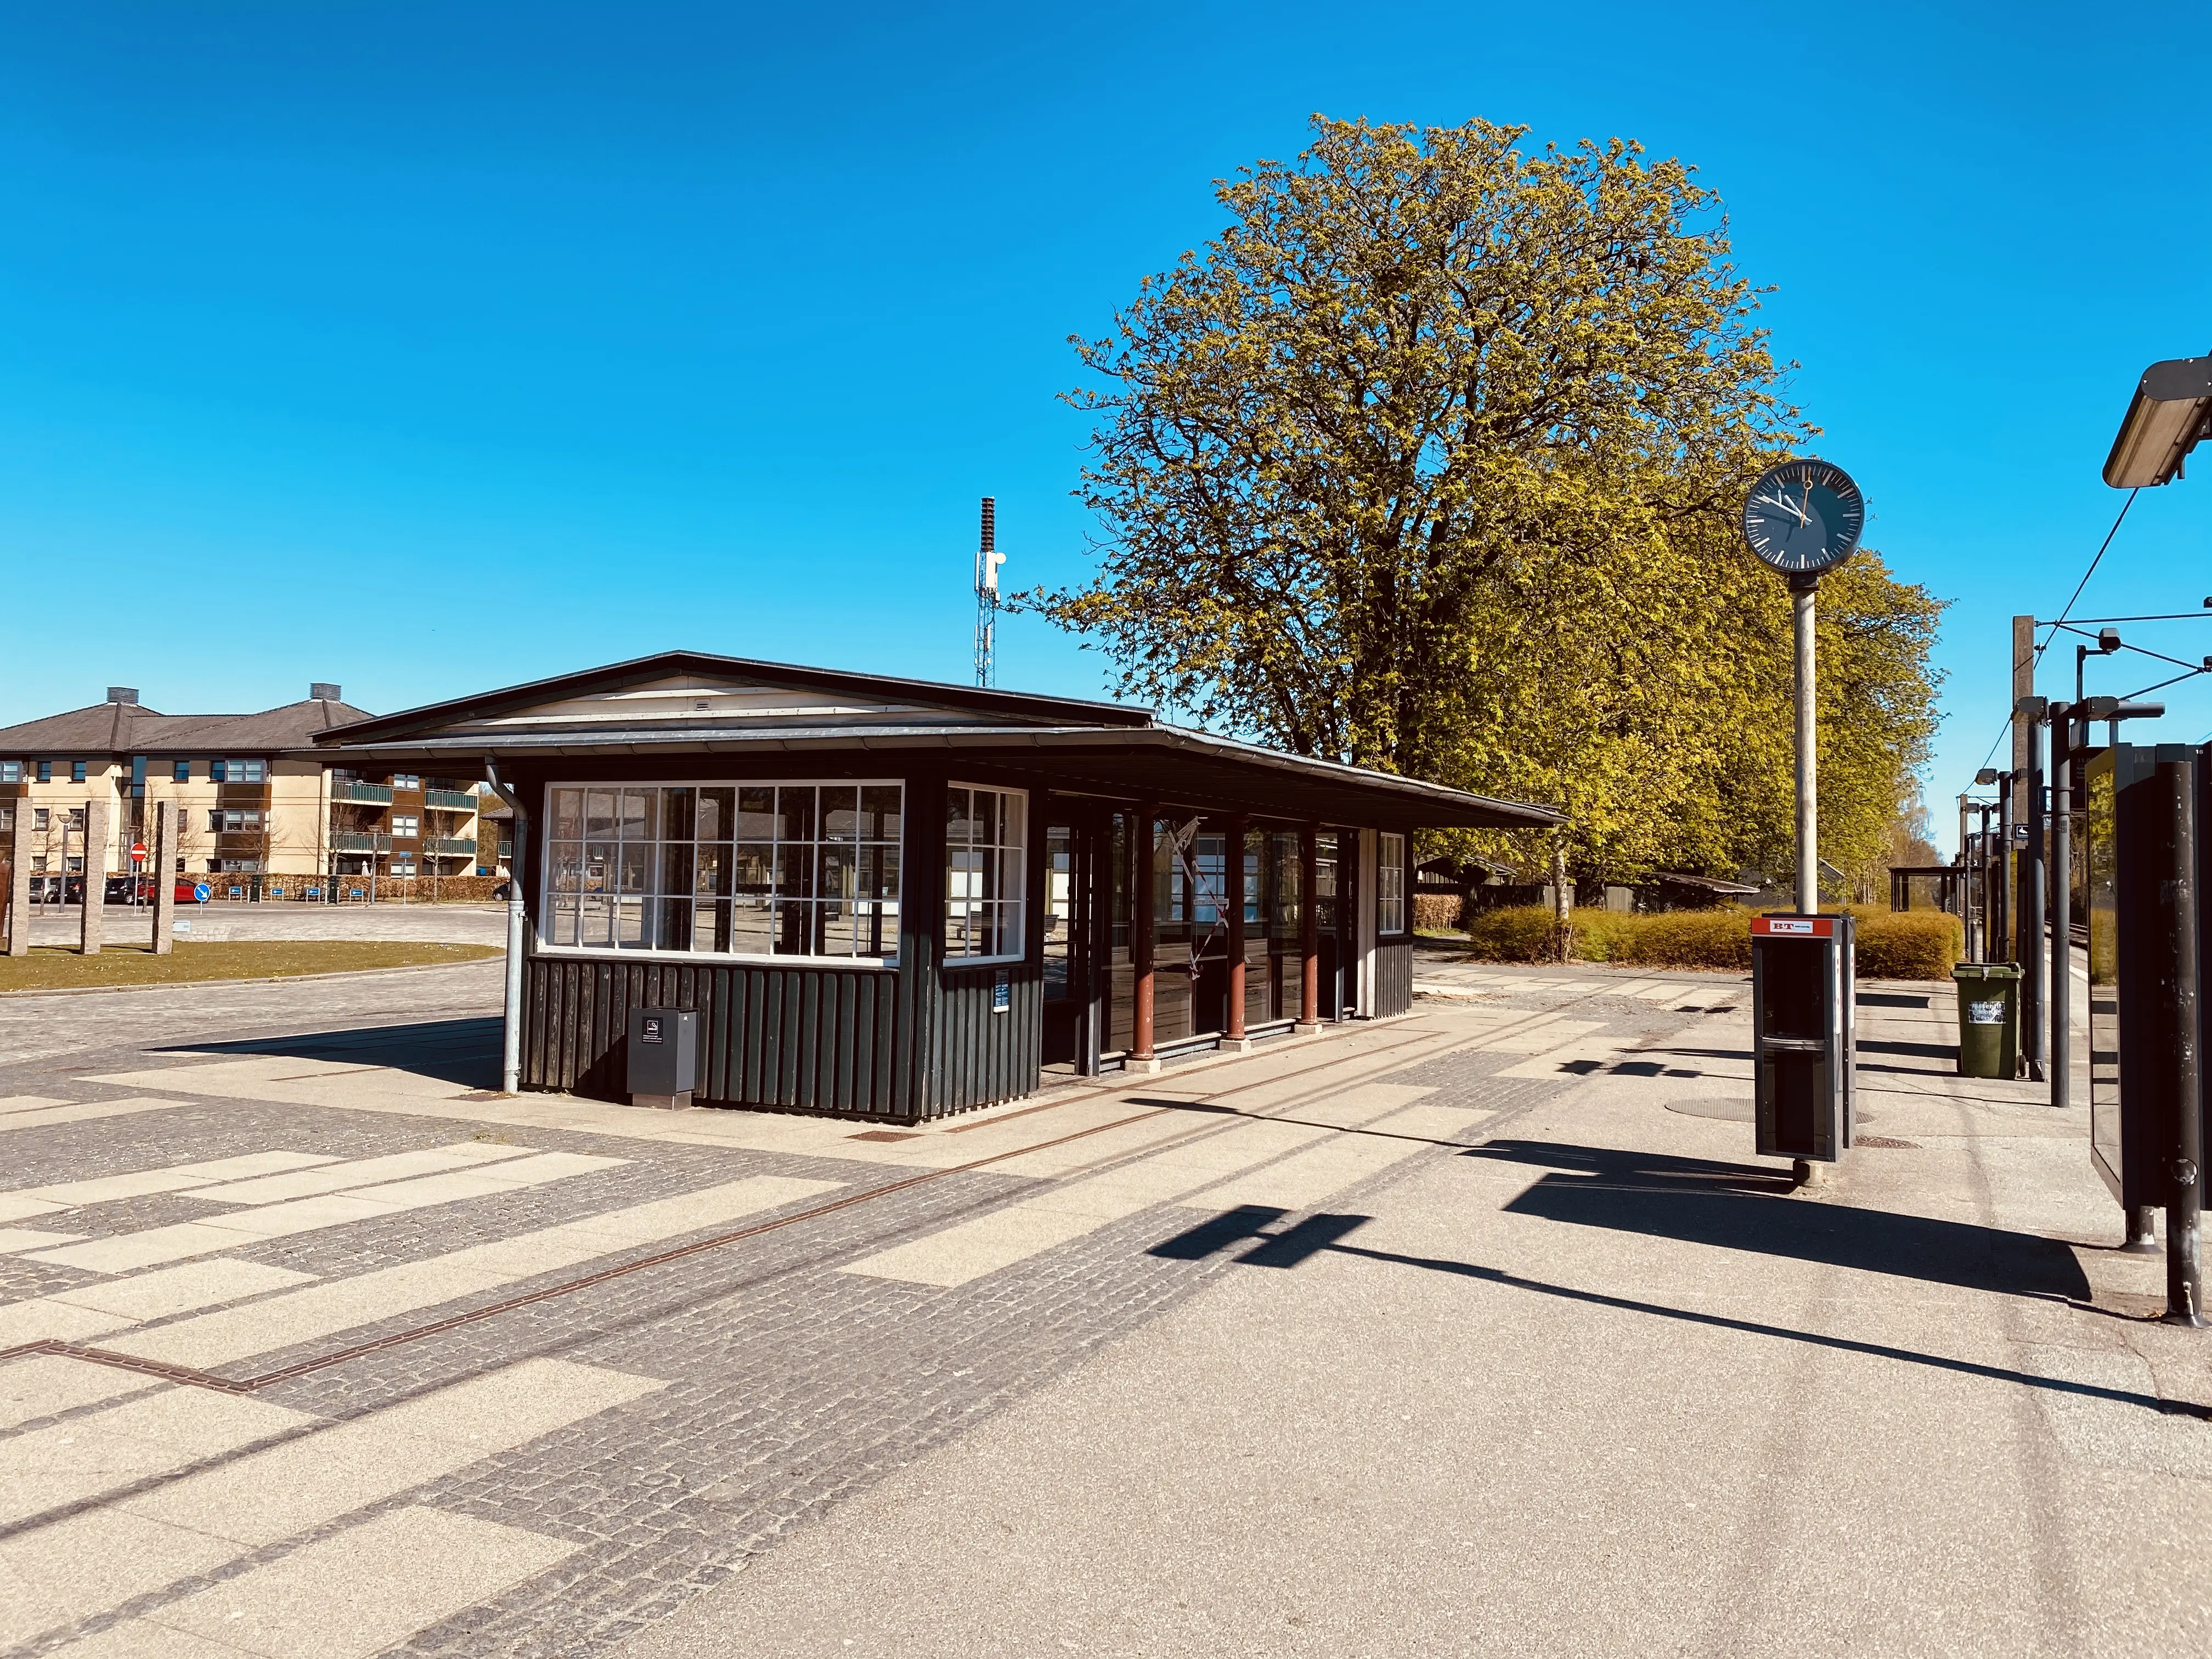 Billede af Humlebæk Station.